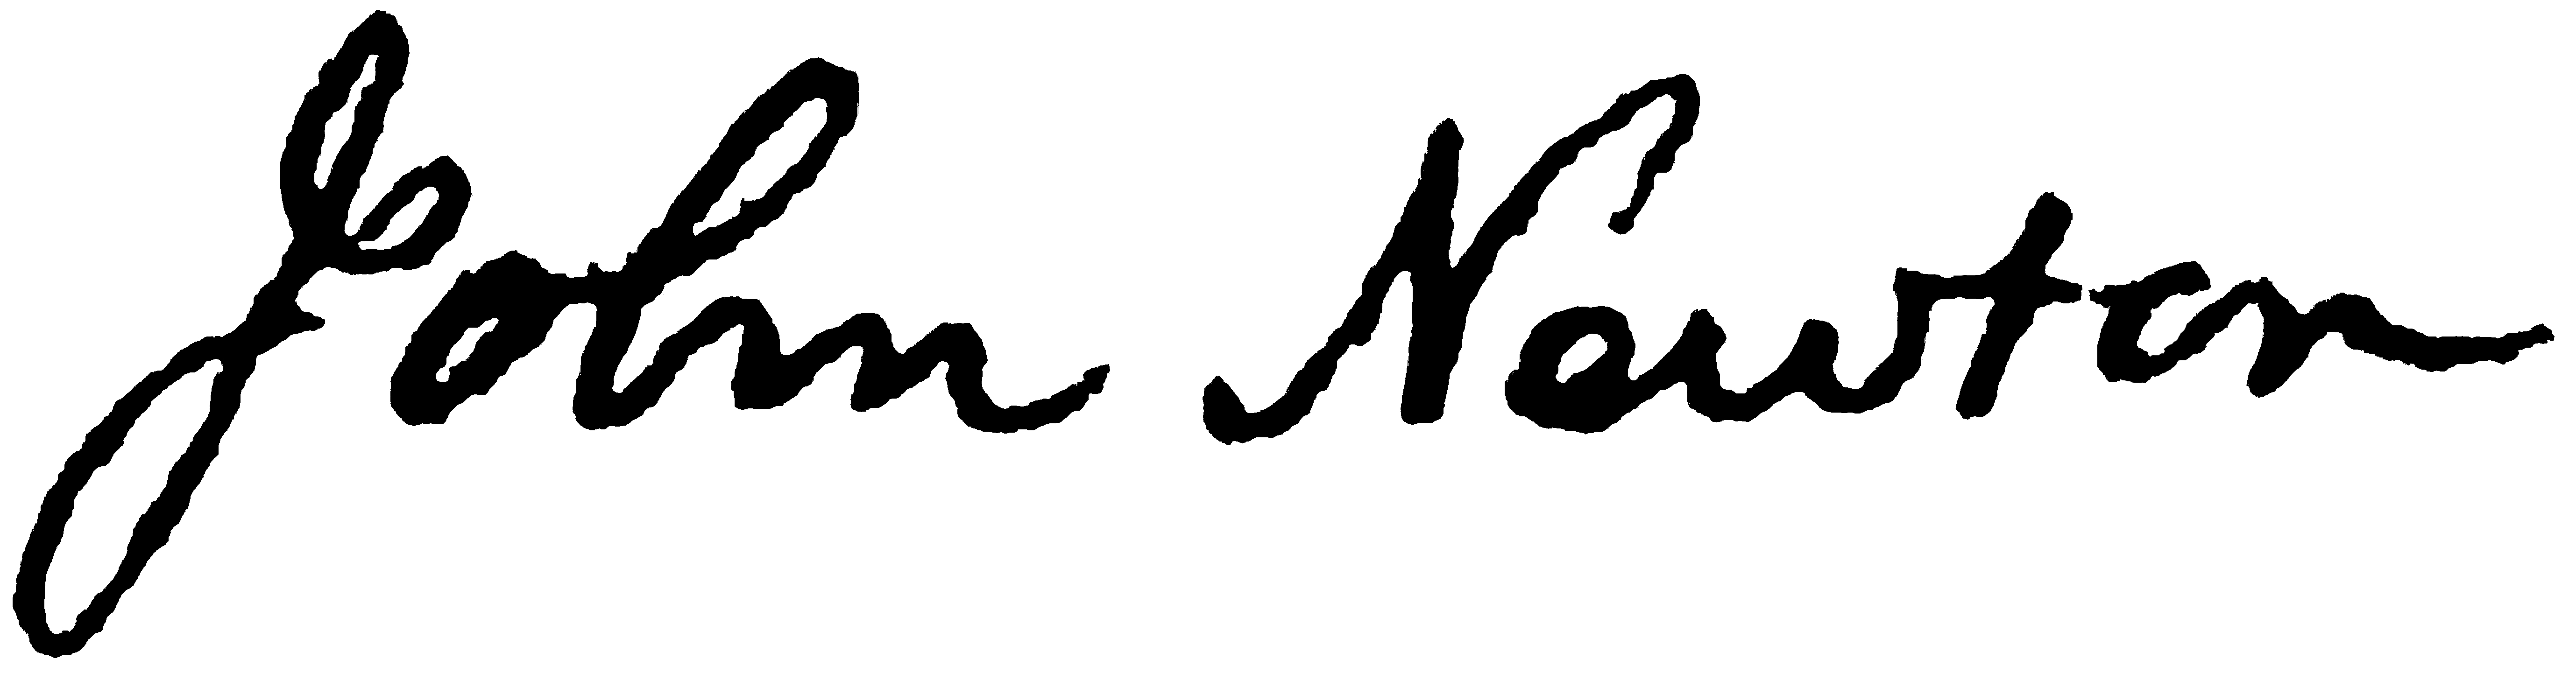 John Newton signature